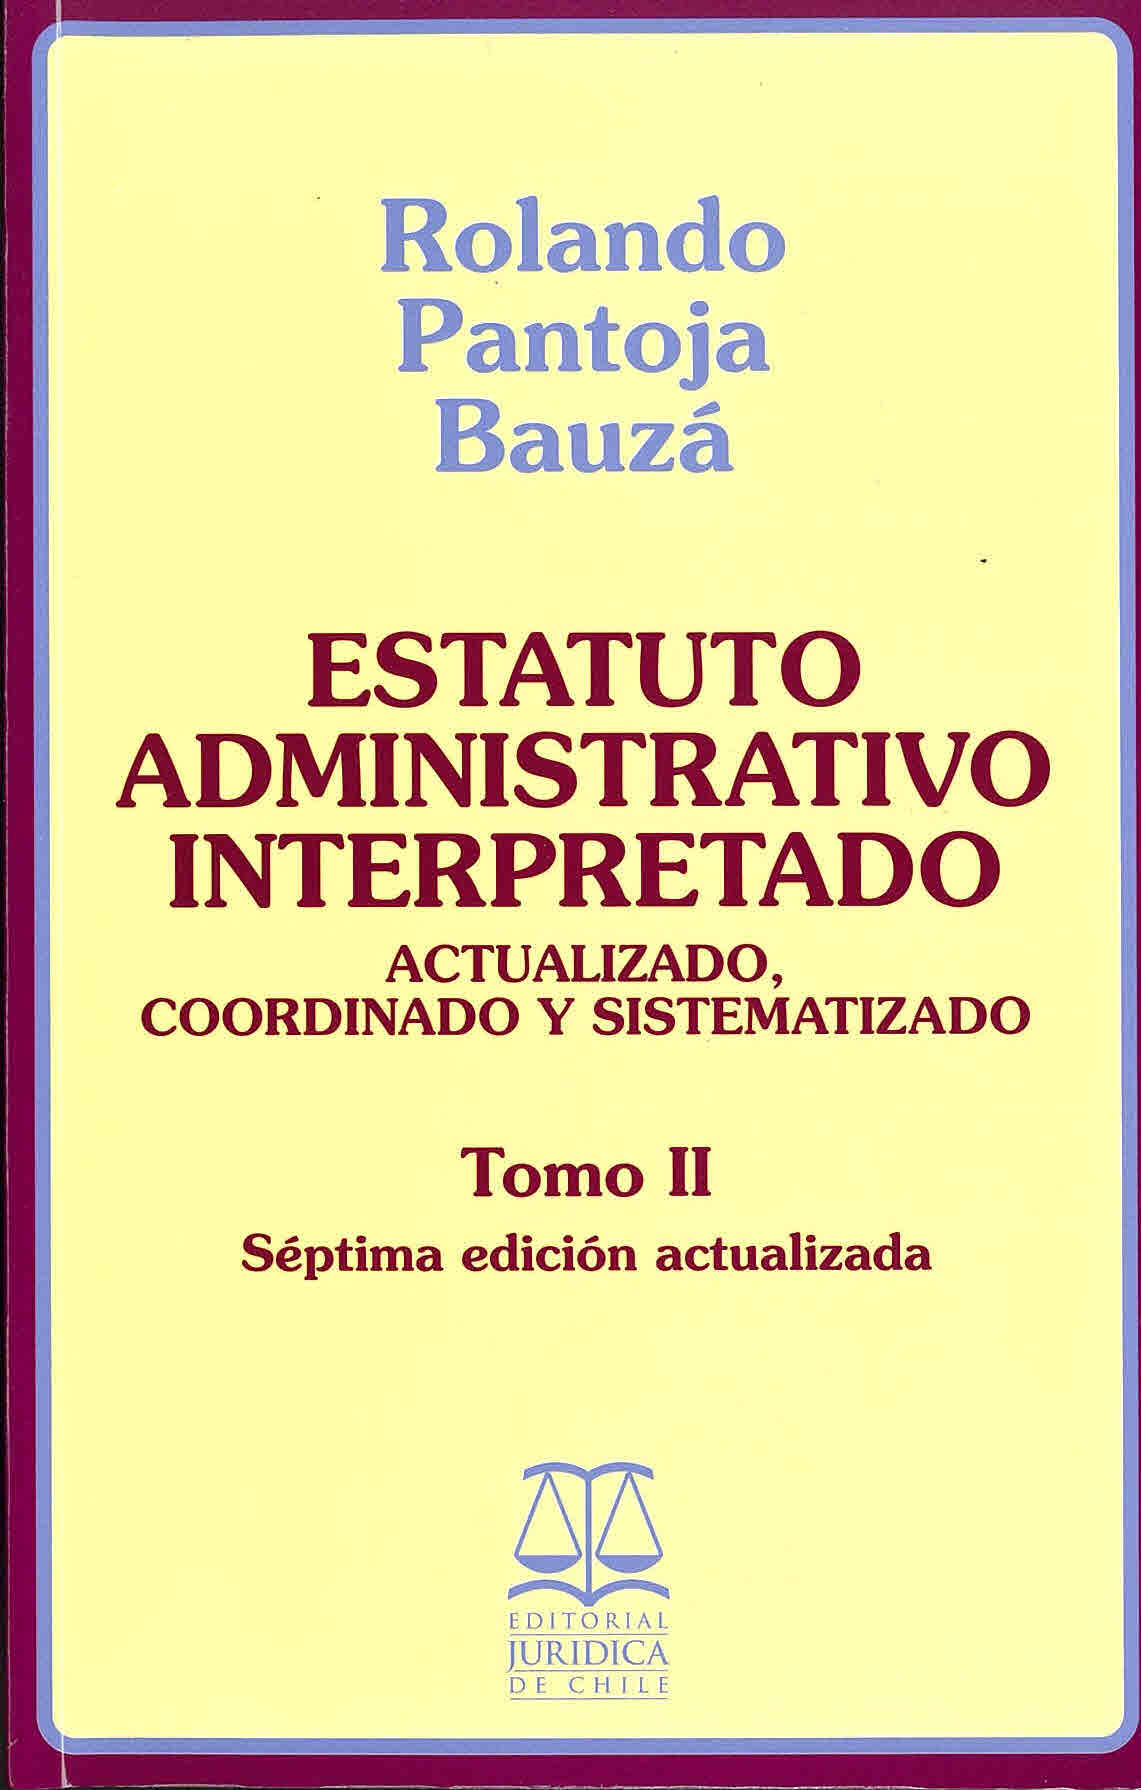 Estatuto administrativo interpretado DFL N°29 de 2005, del Ministerio de Hacienda. Texto refundido, coordinado y sistematizado de la ley N°18.834 sobre estatuto administrativo